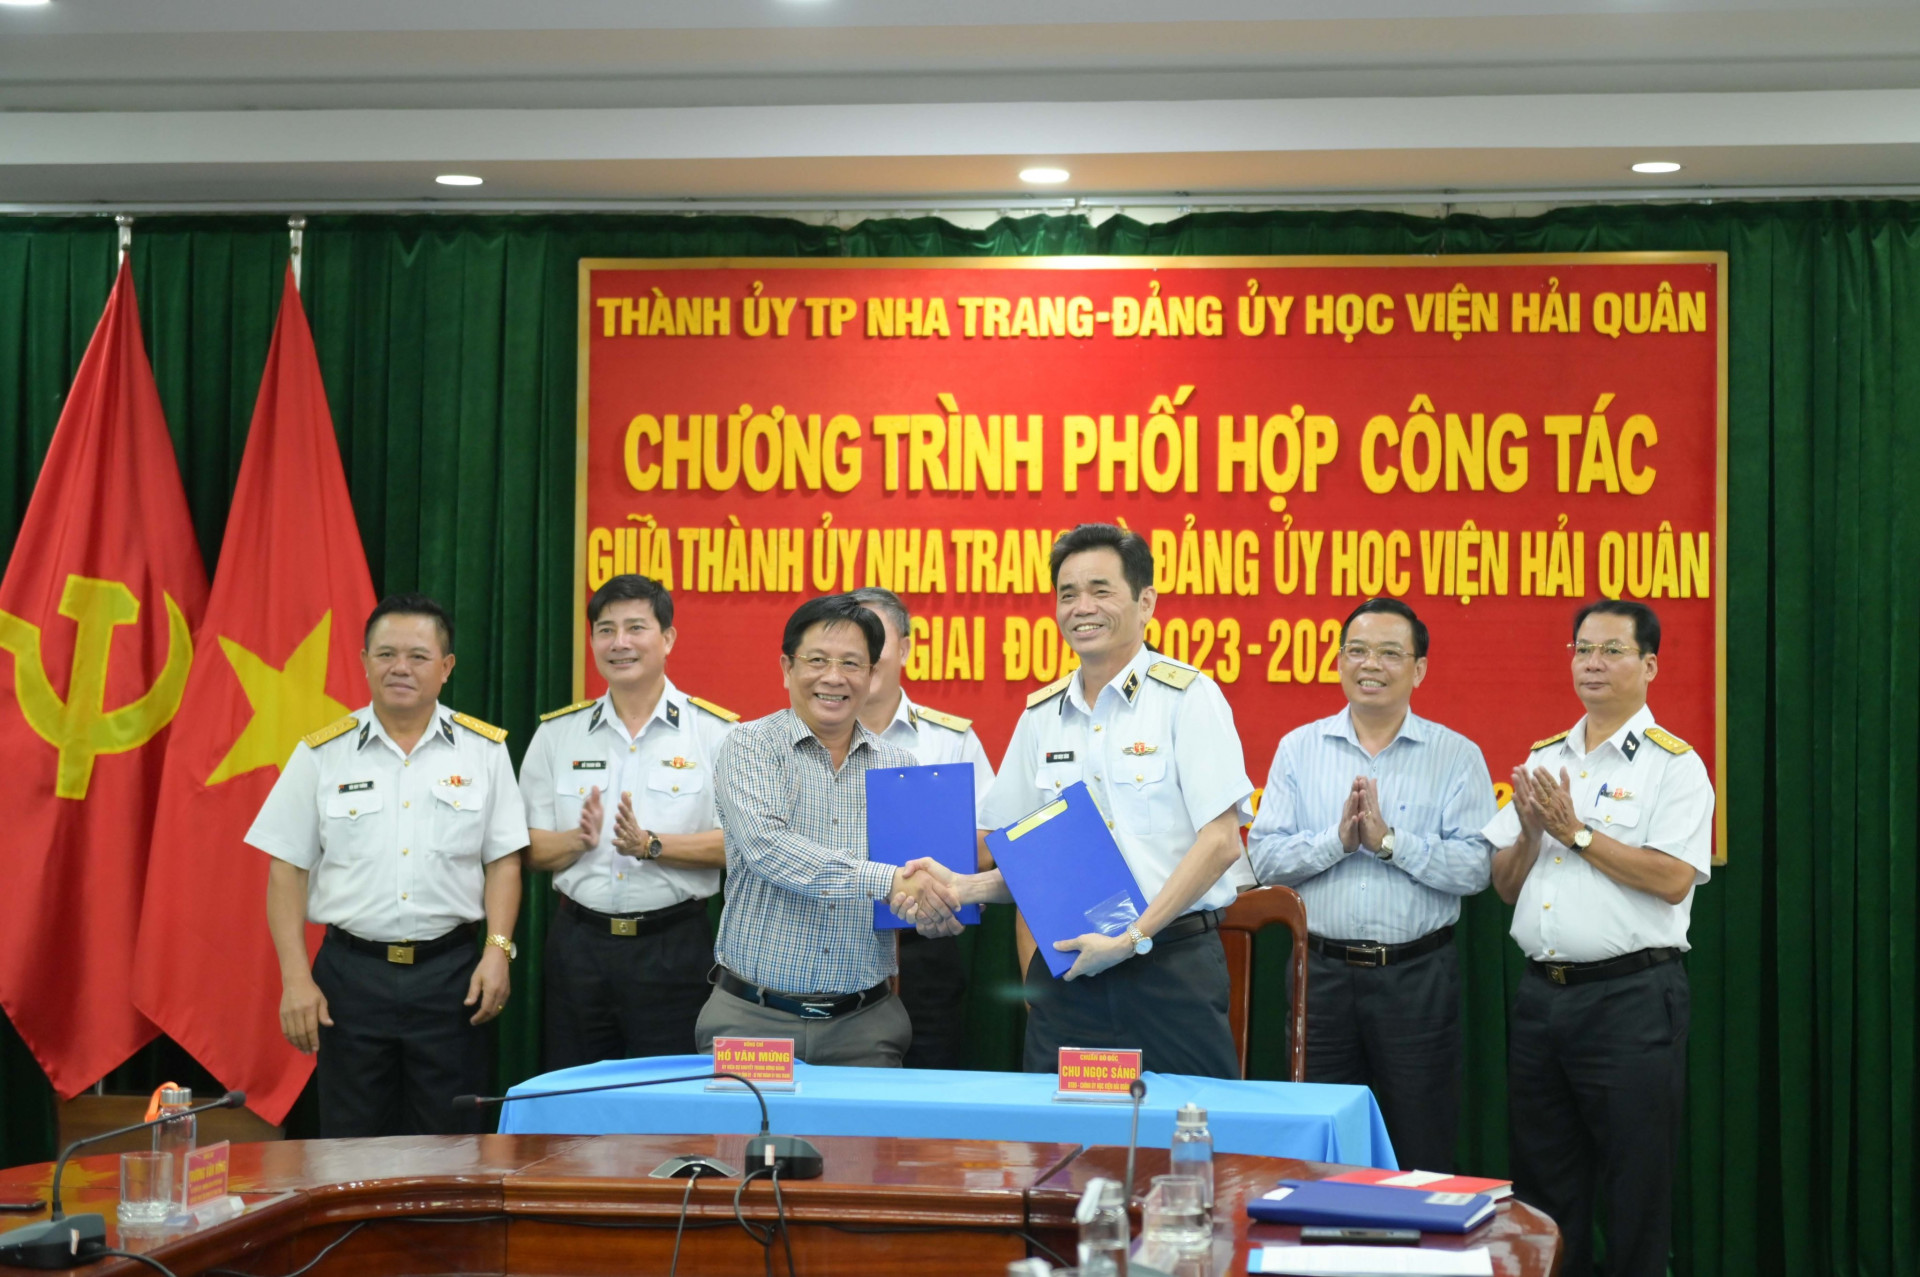 Lãnh đạo TP. Nha Trang và Học viện Hải quân ký kết chương trình phối hợp giai đoạn 2023 - 2025